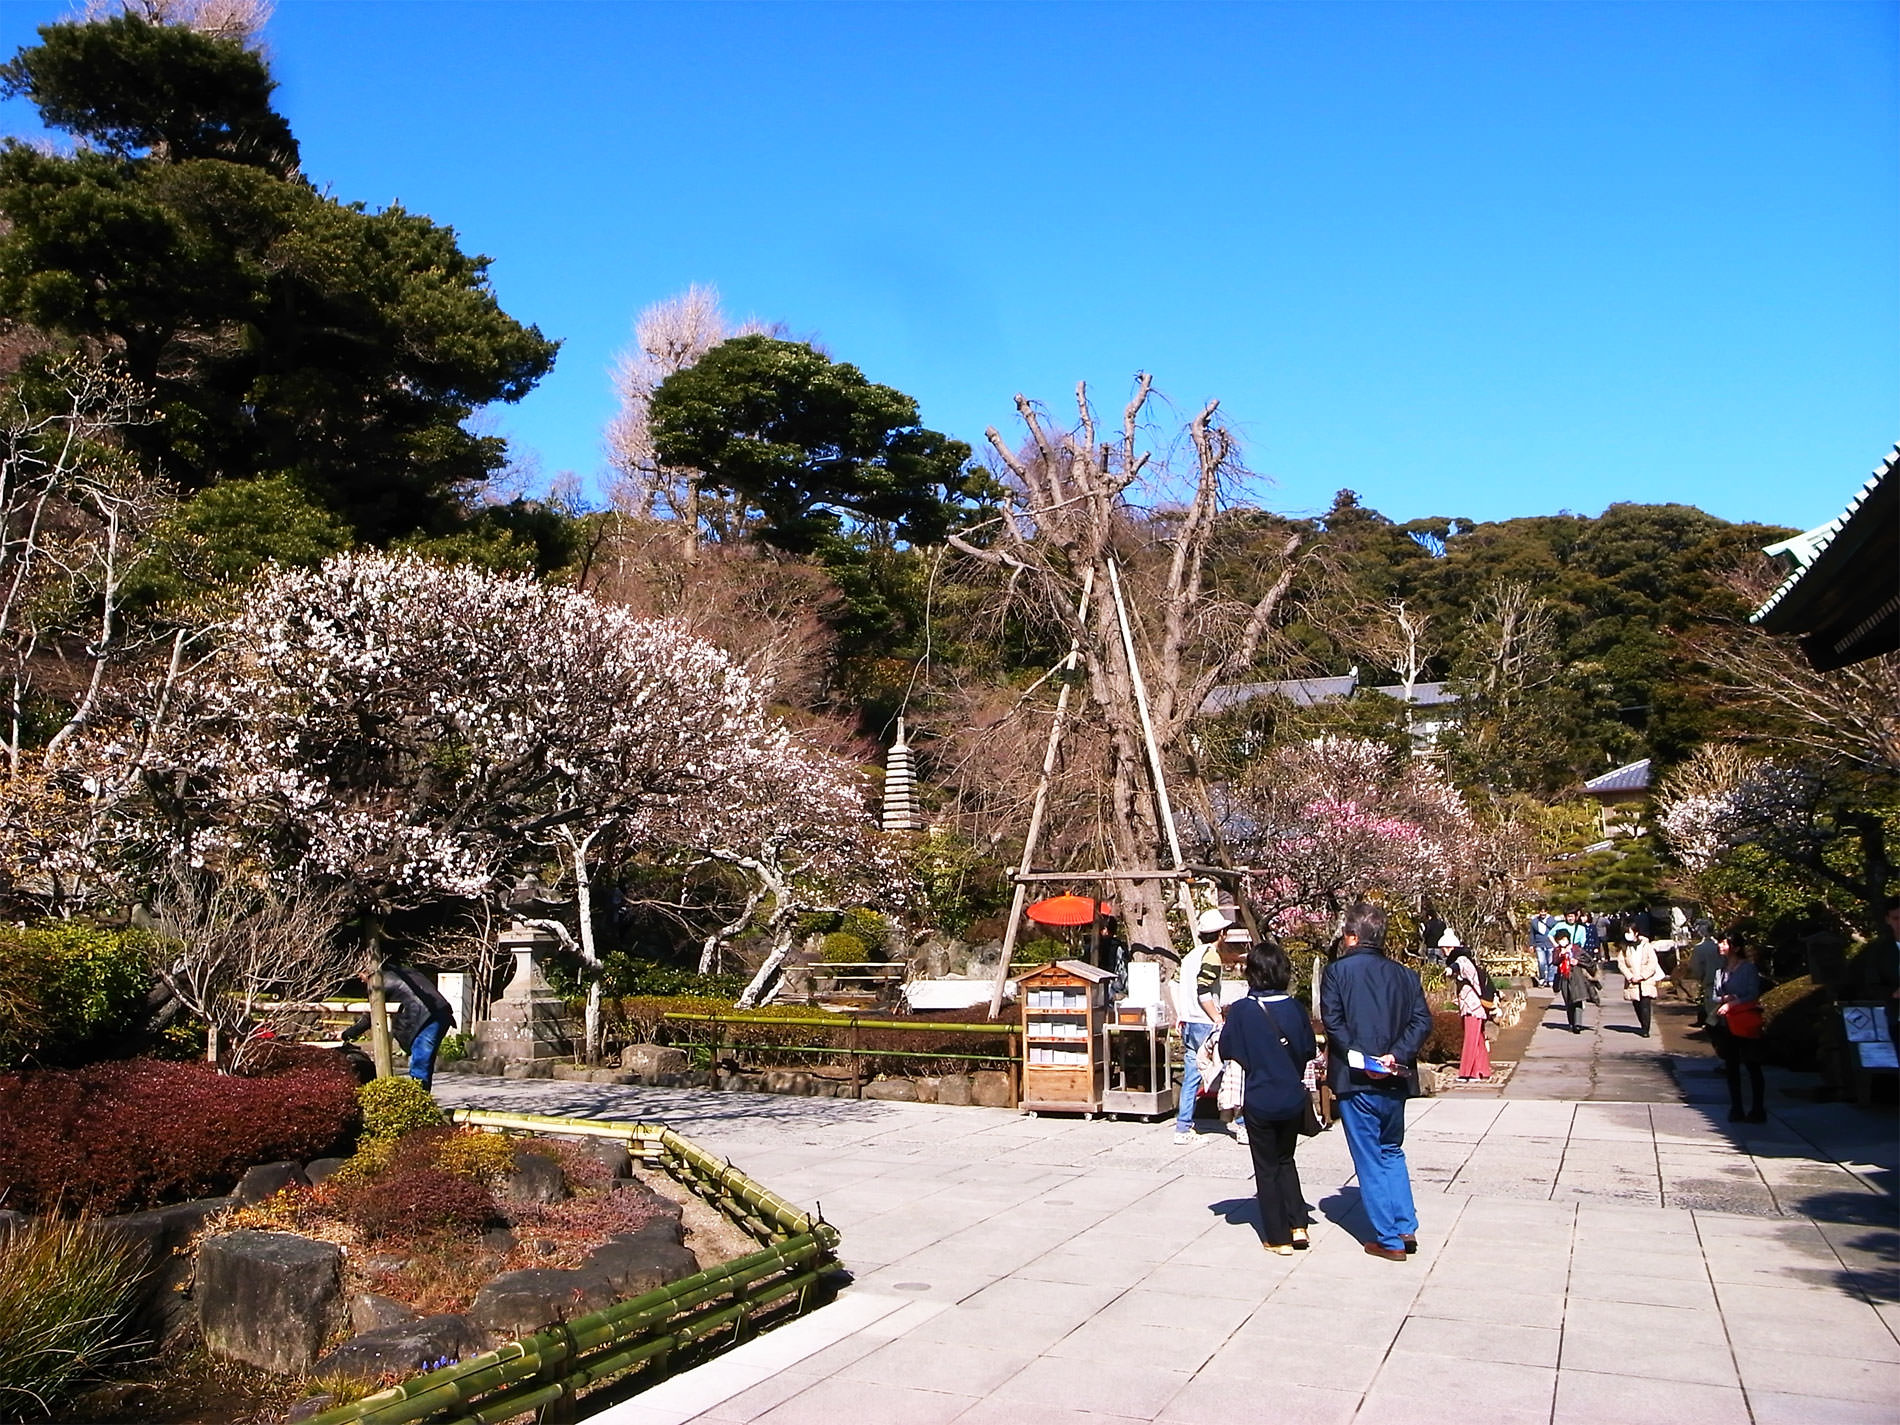 鎌倉散策と梅の花と | Kamakura walking and Ume in 2016